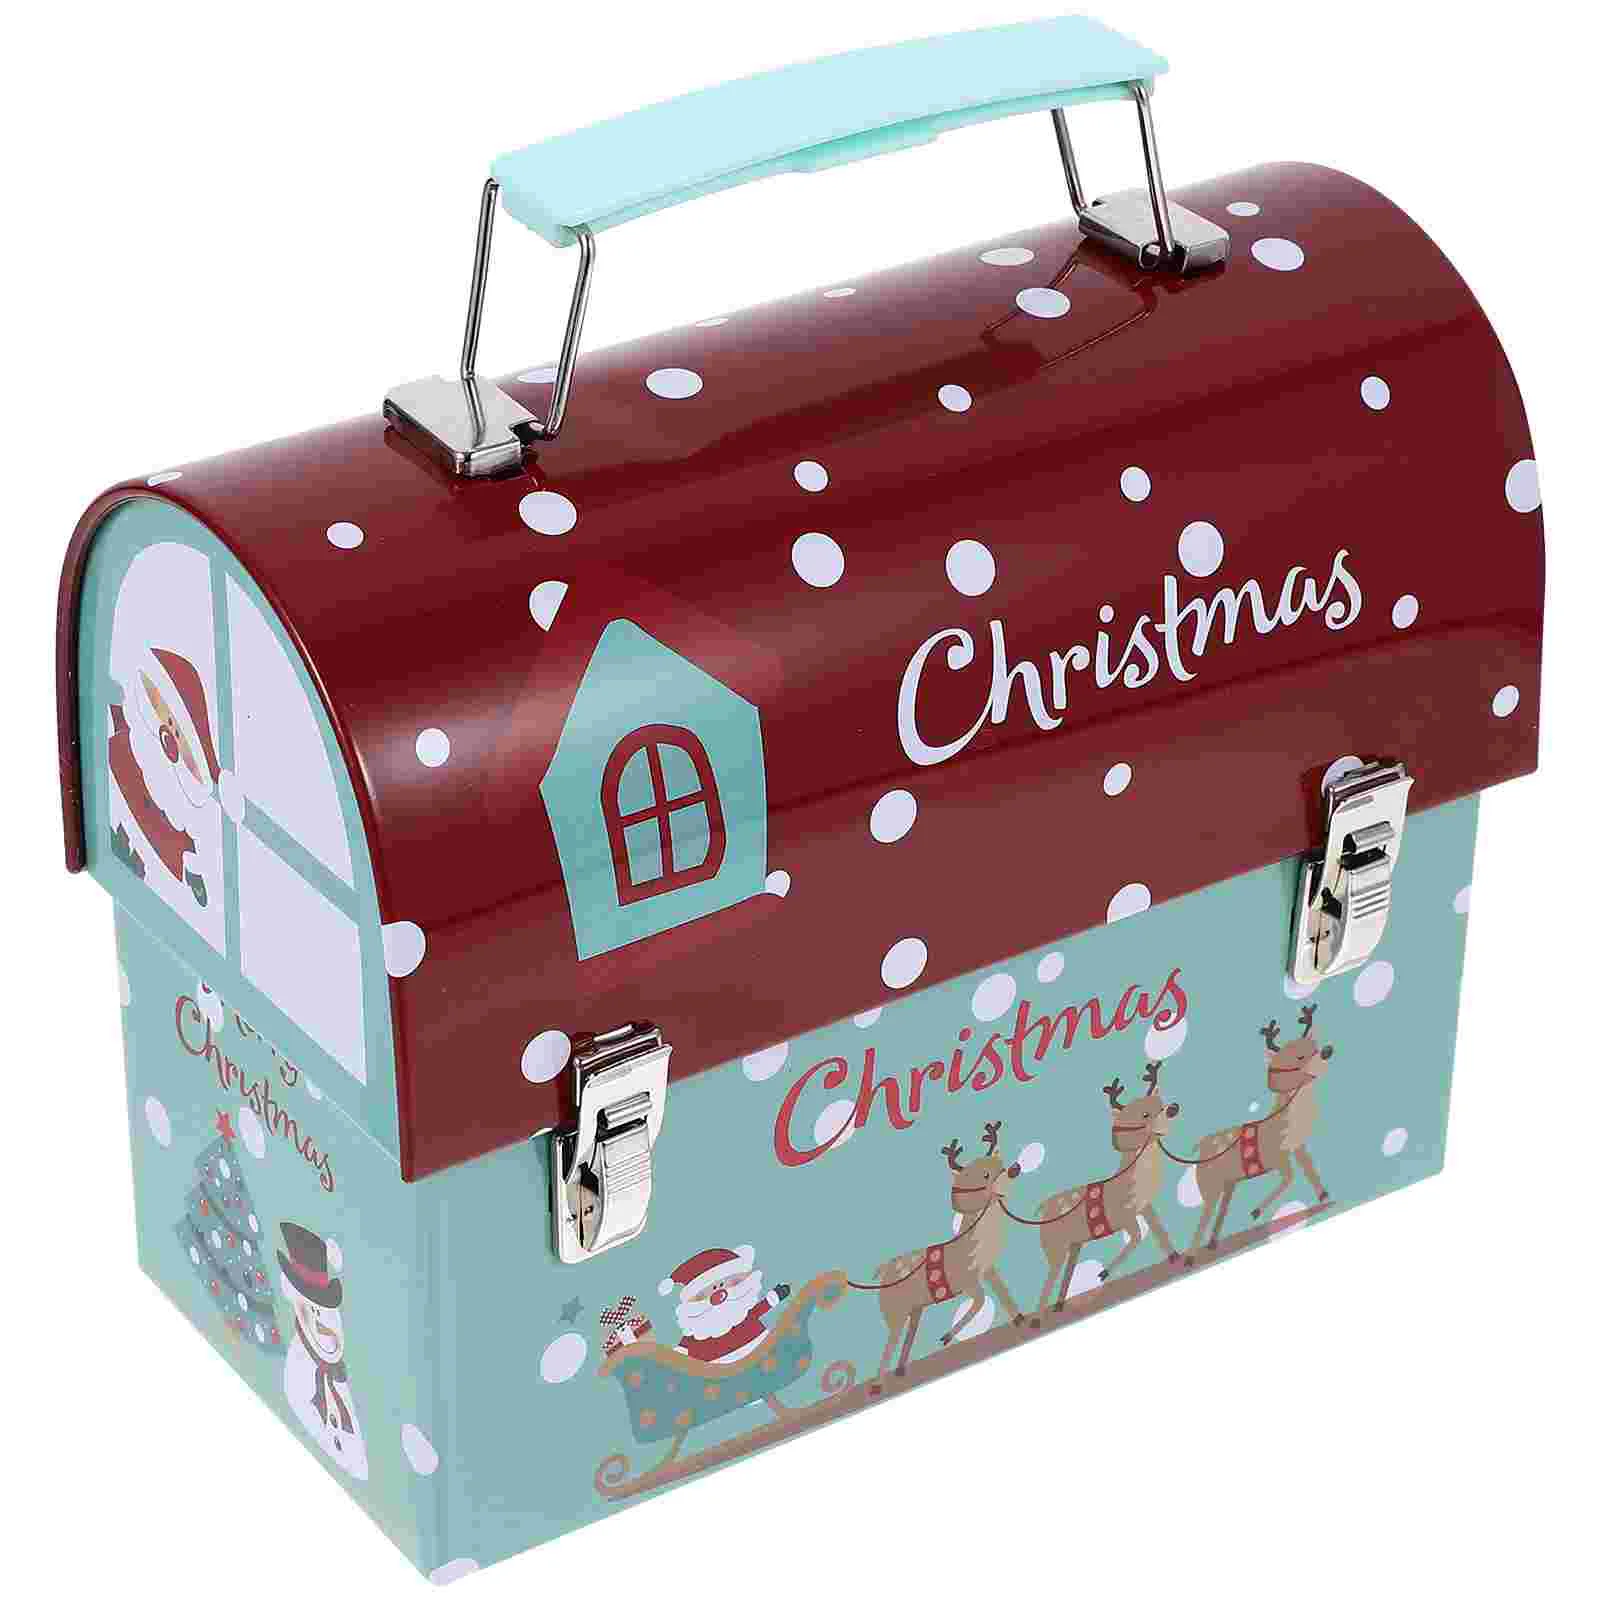 Металлические формочки для печенья, Рождественский жестяной почтовый ящик, Рождественский контейнер для конфет, Железный контейнер для печенья на День Святого Валентина, Рождественские Пустые формочки для печенья - 3